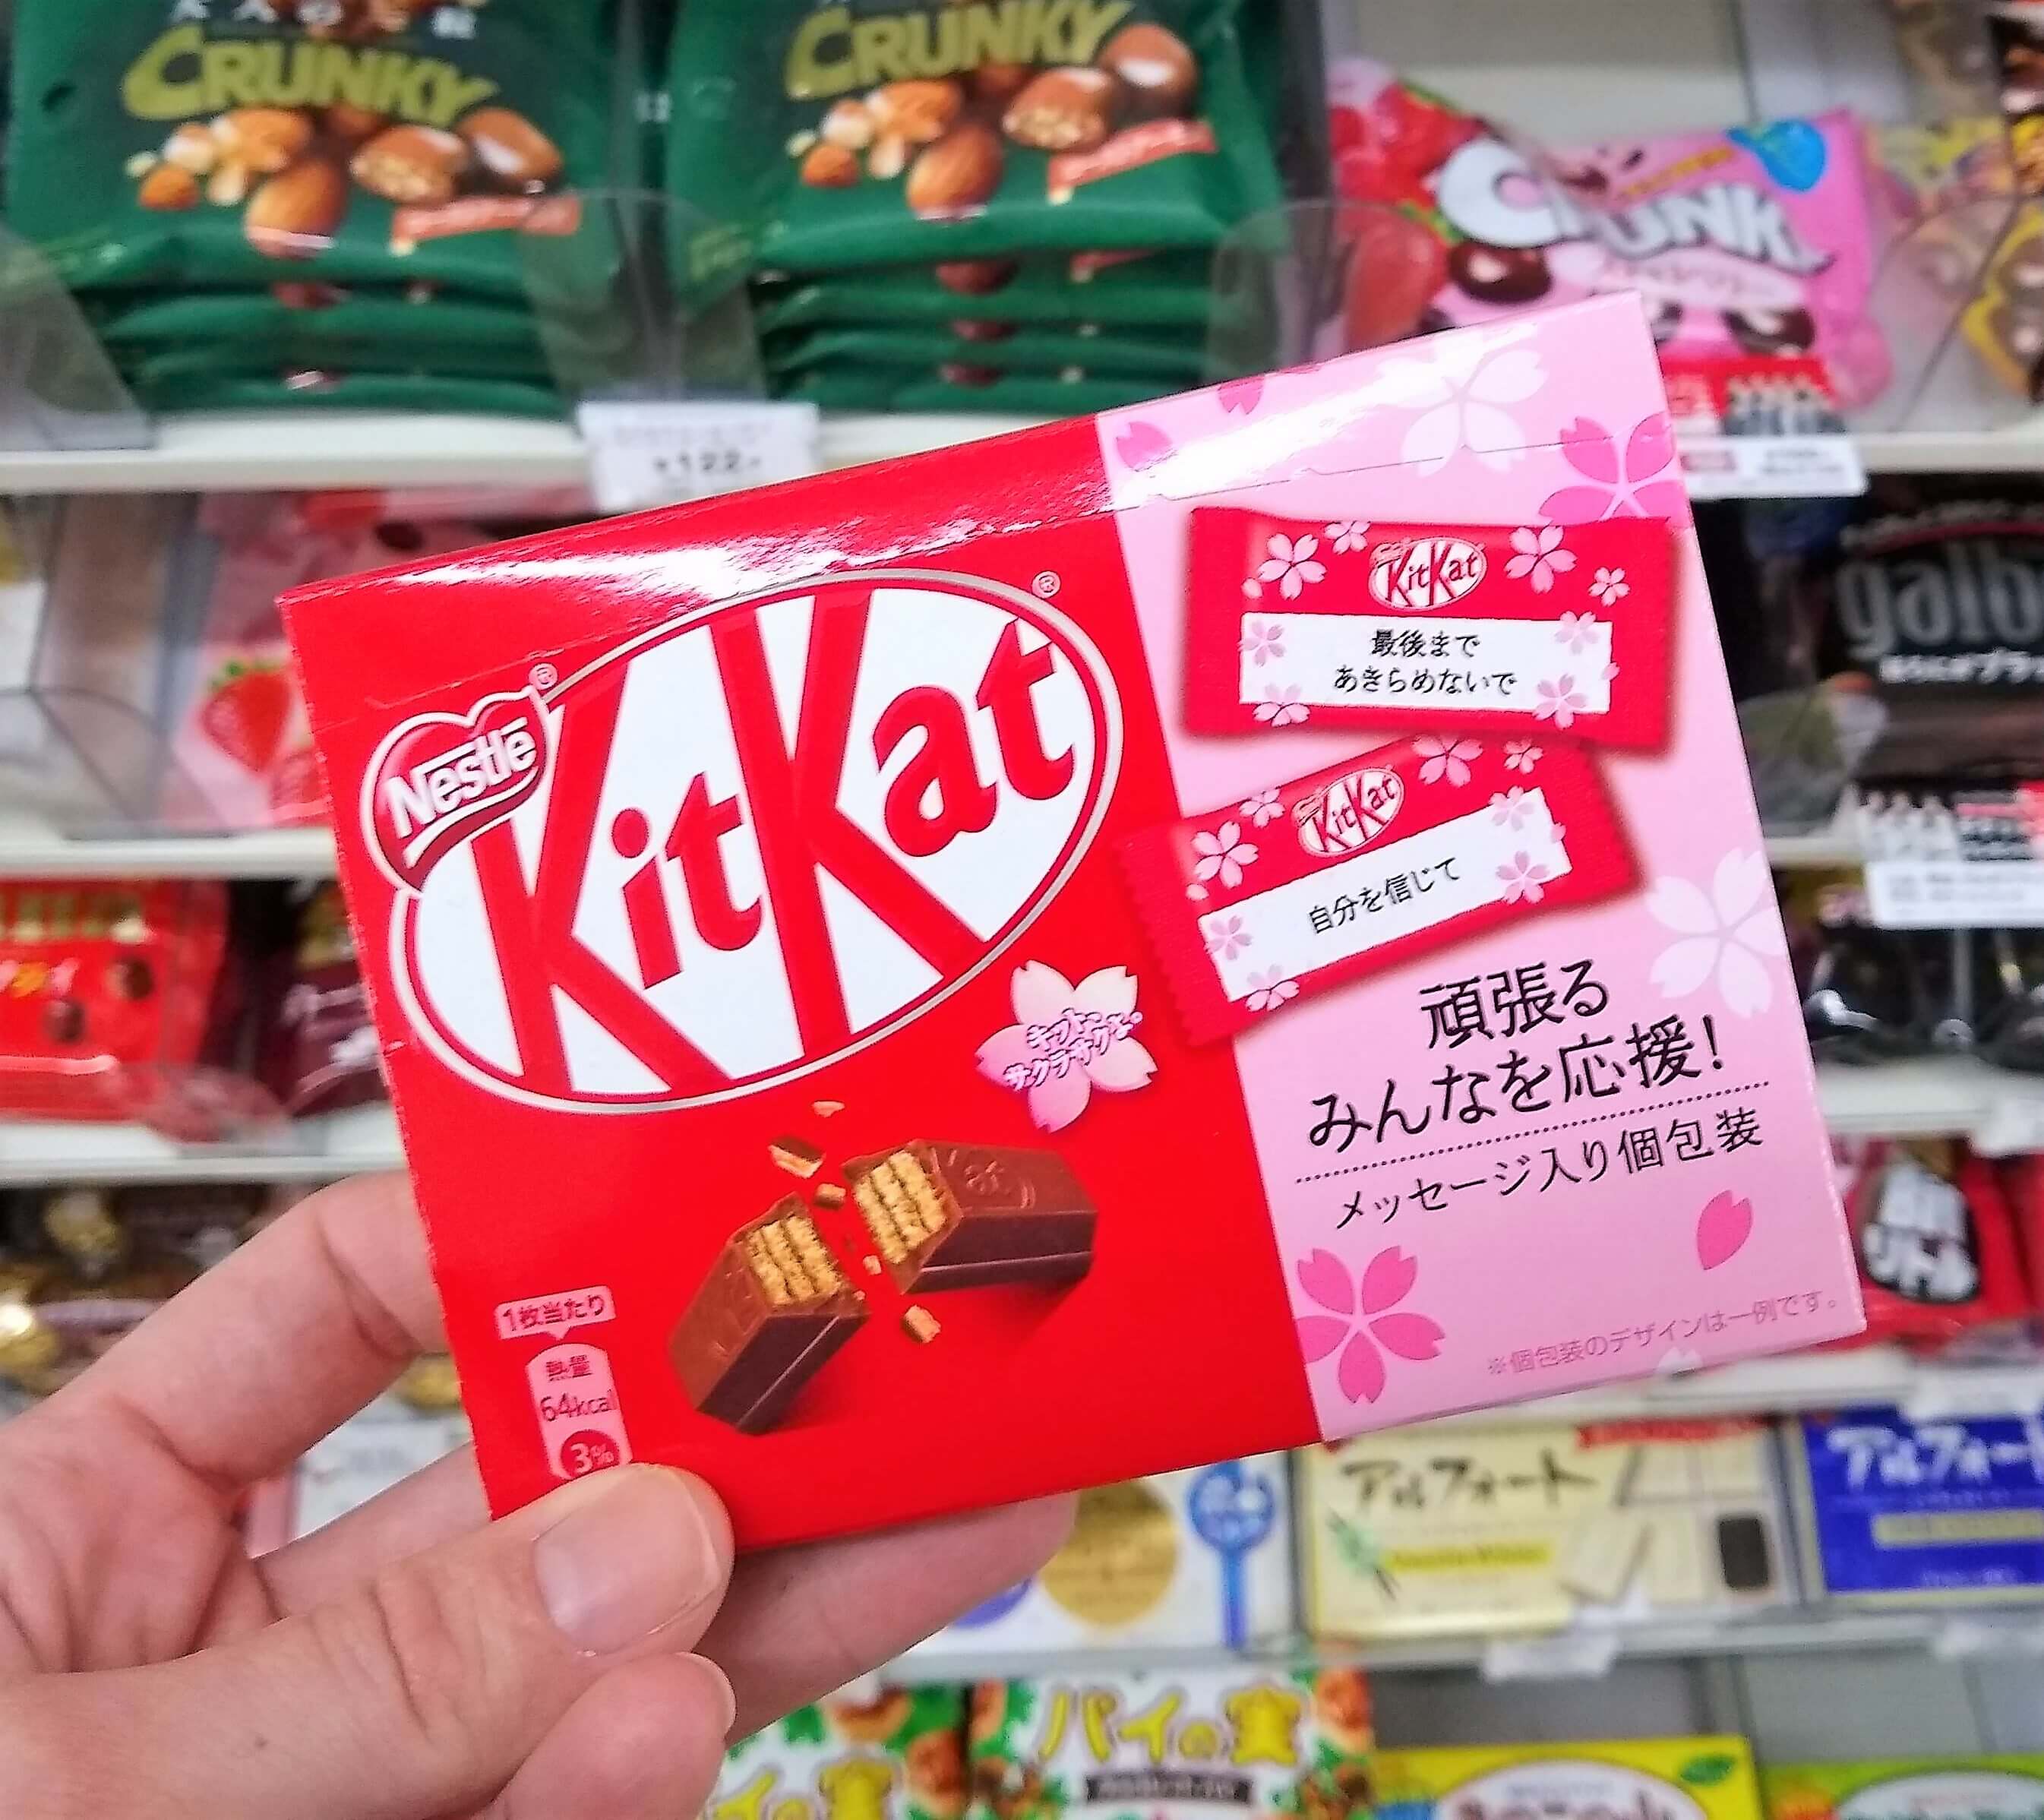 Sakura Kit Kats